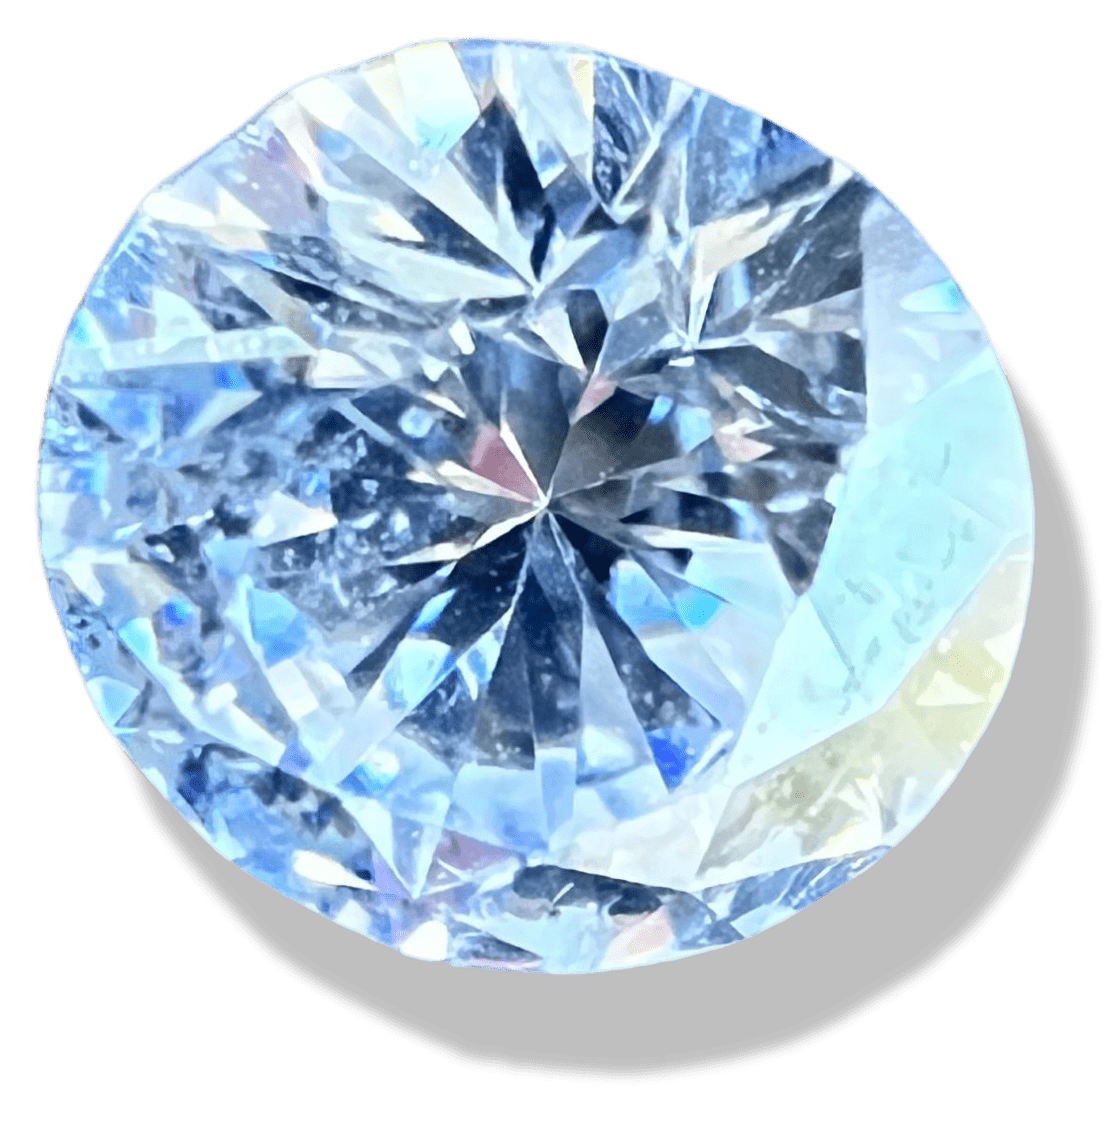 pierre de diamant taillé sur fond transparent